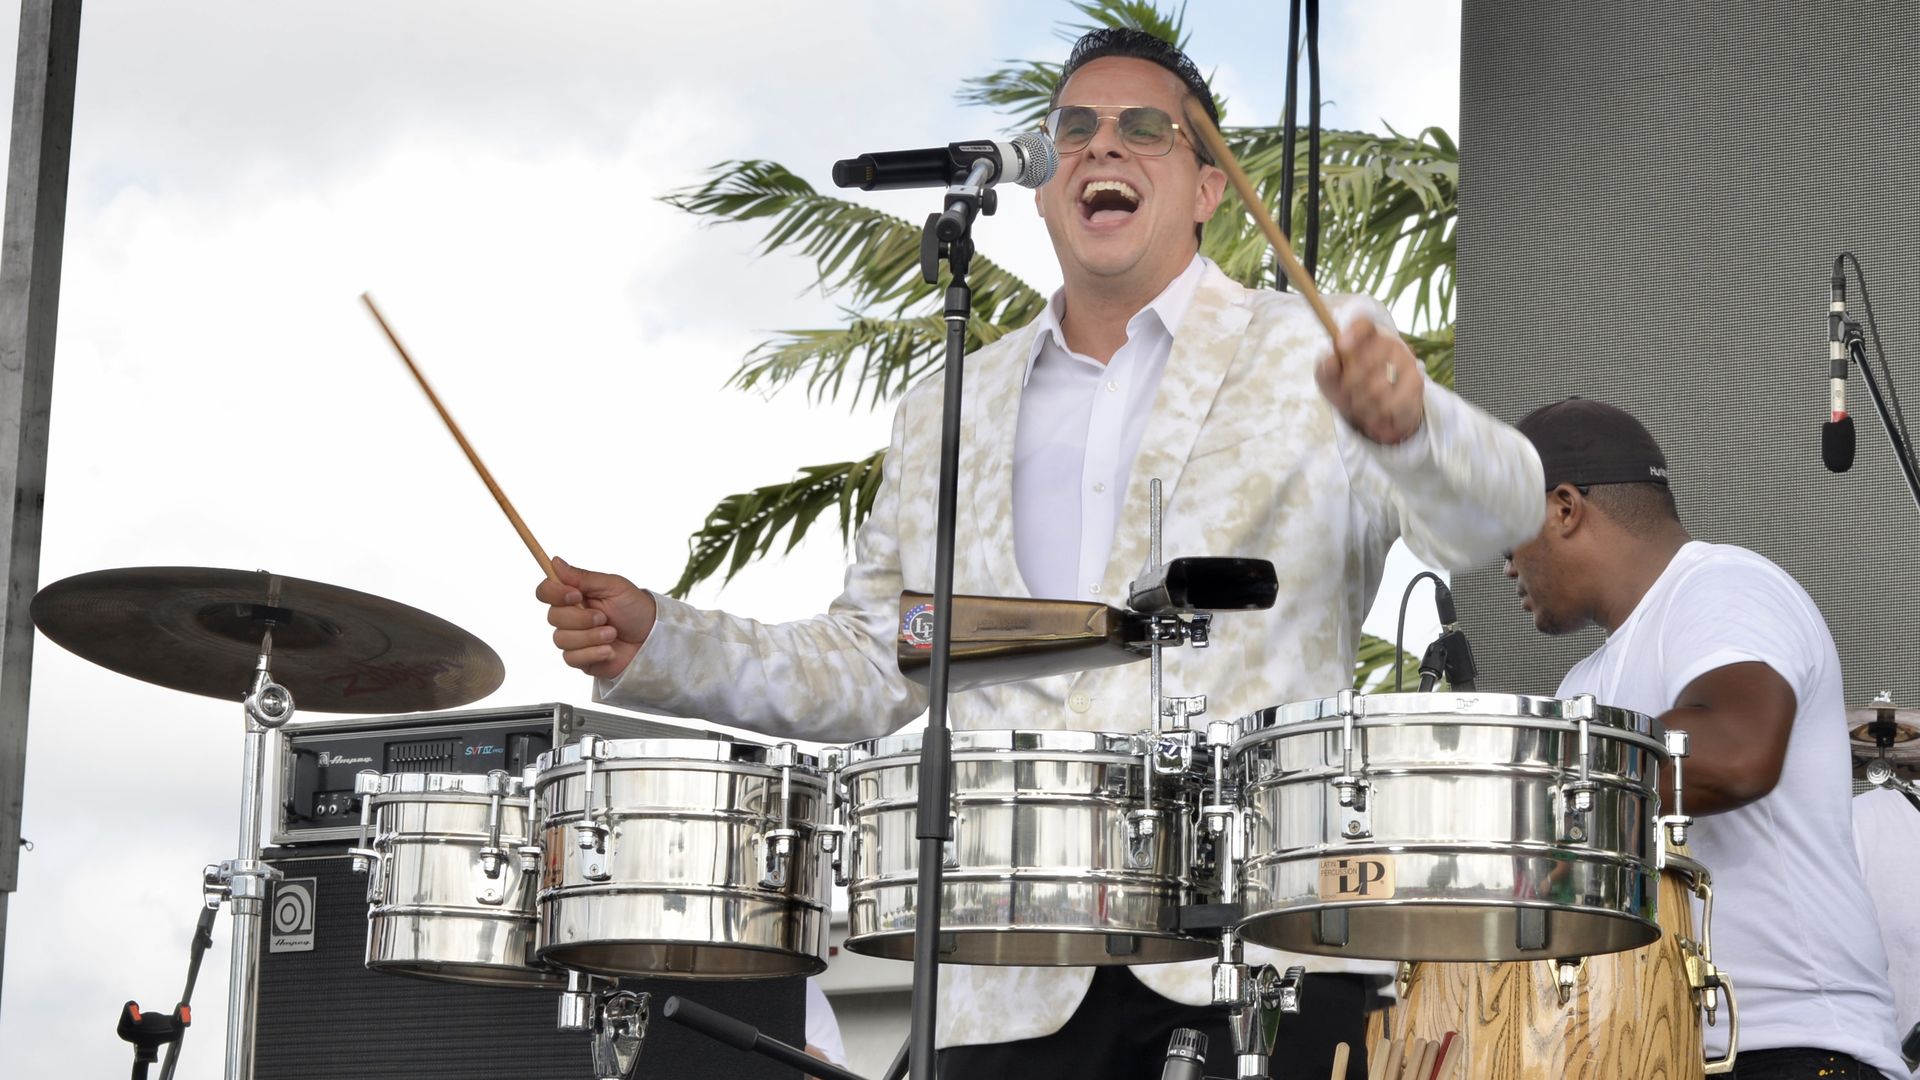 Tito Puente Jr. sings during Carnaval Miami's "Noche de Carnaval" at the Miami-Dade Fair & Expo Center.